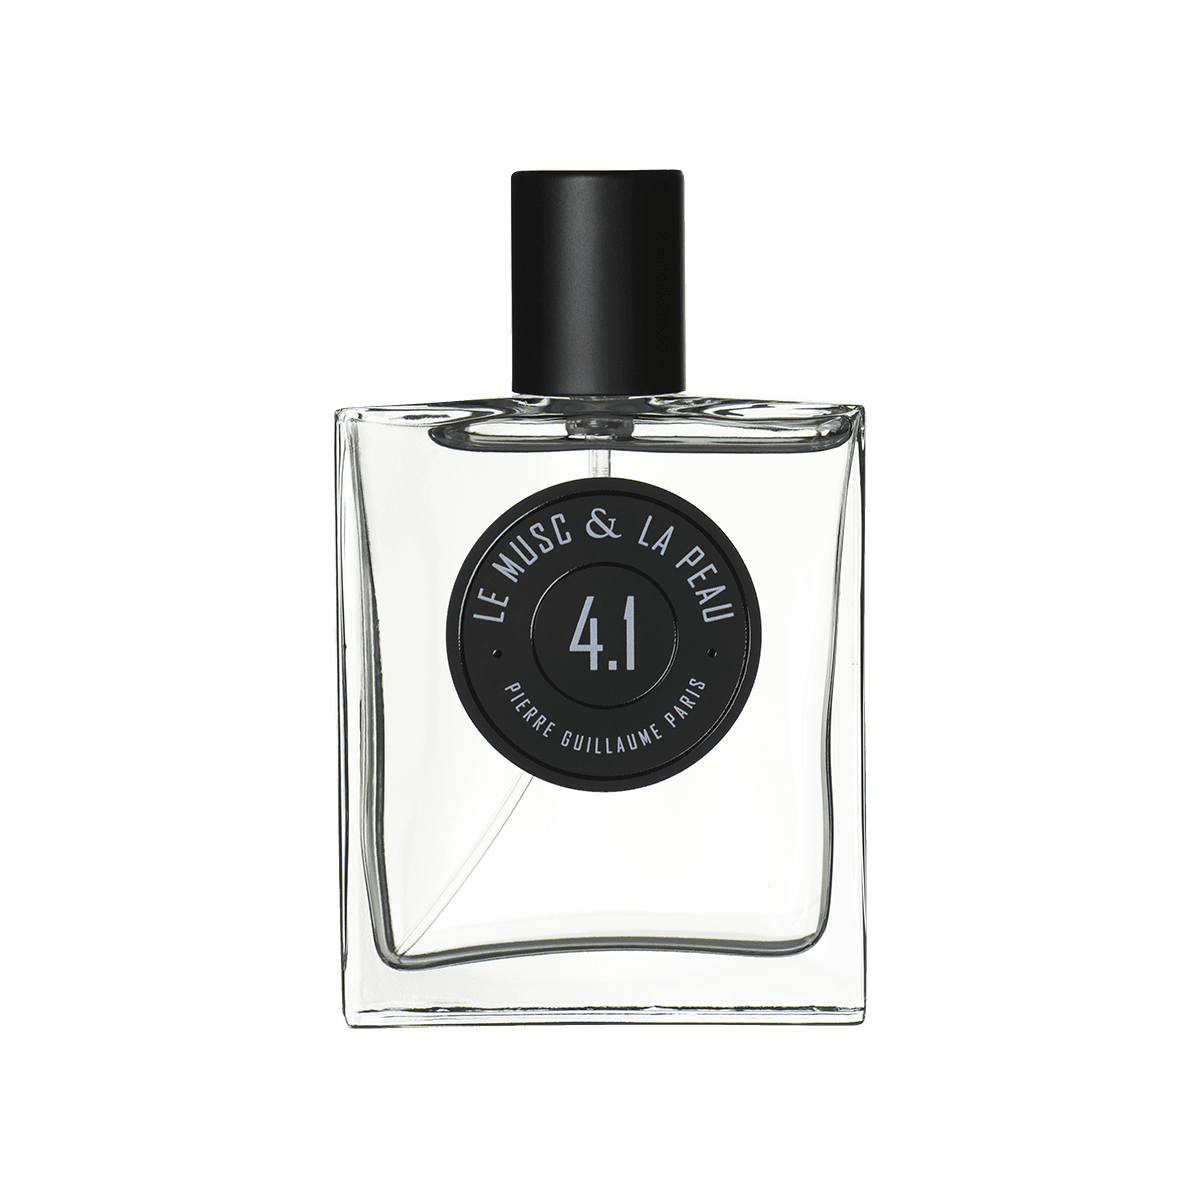 Pierre Guillaume Paris - 4.1 Le musc & la peau 50 ml | Perfume Lounge